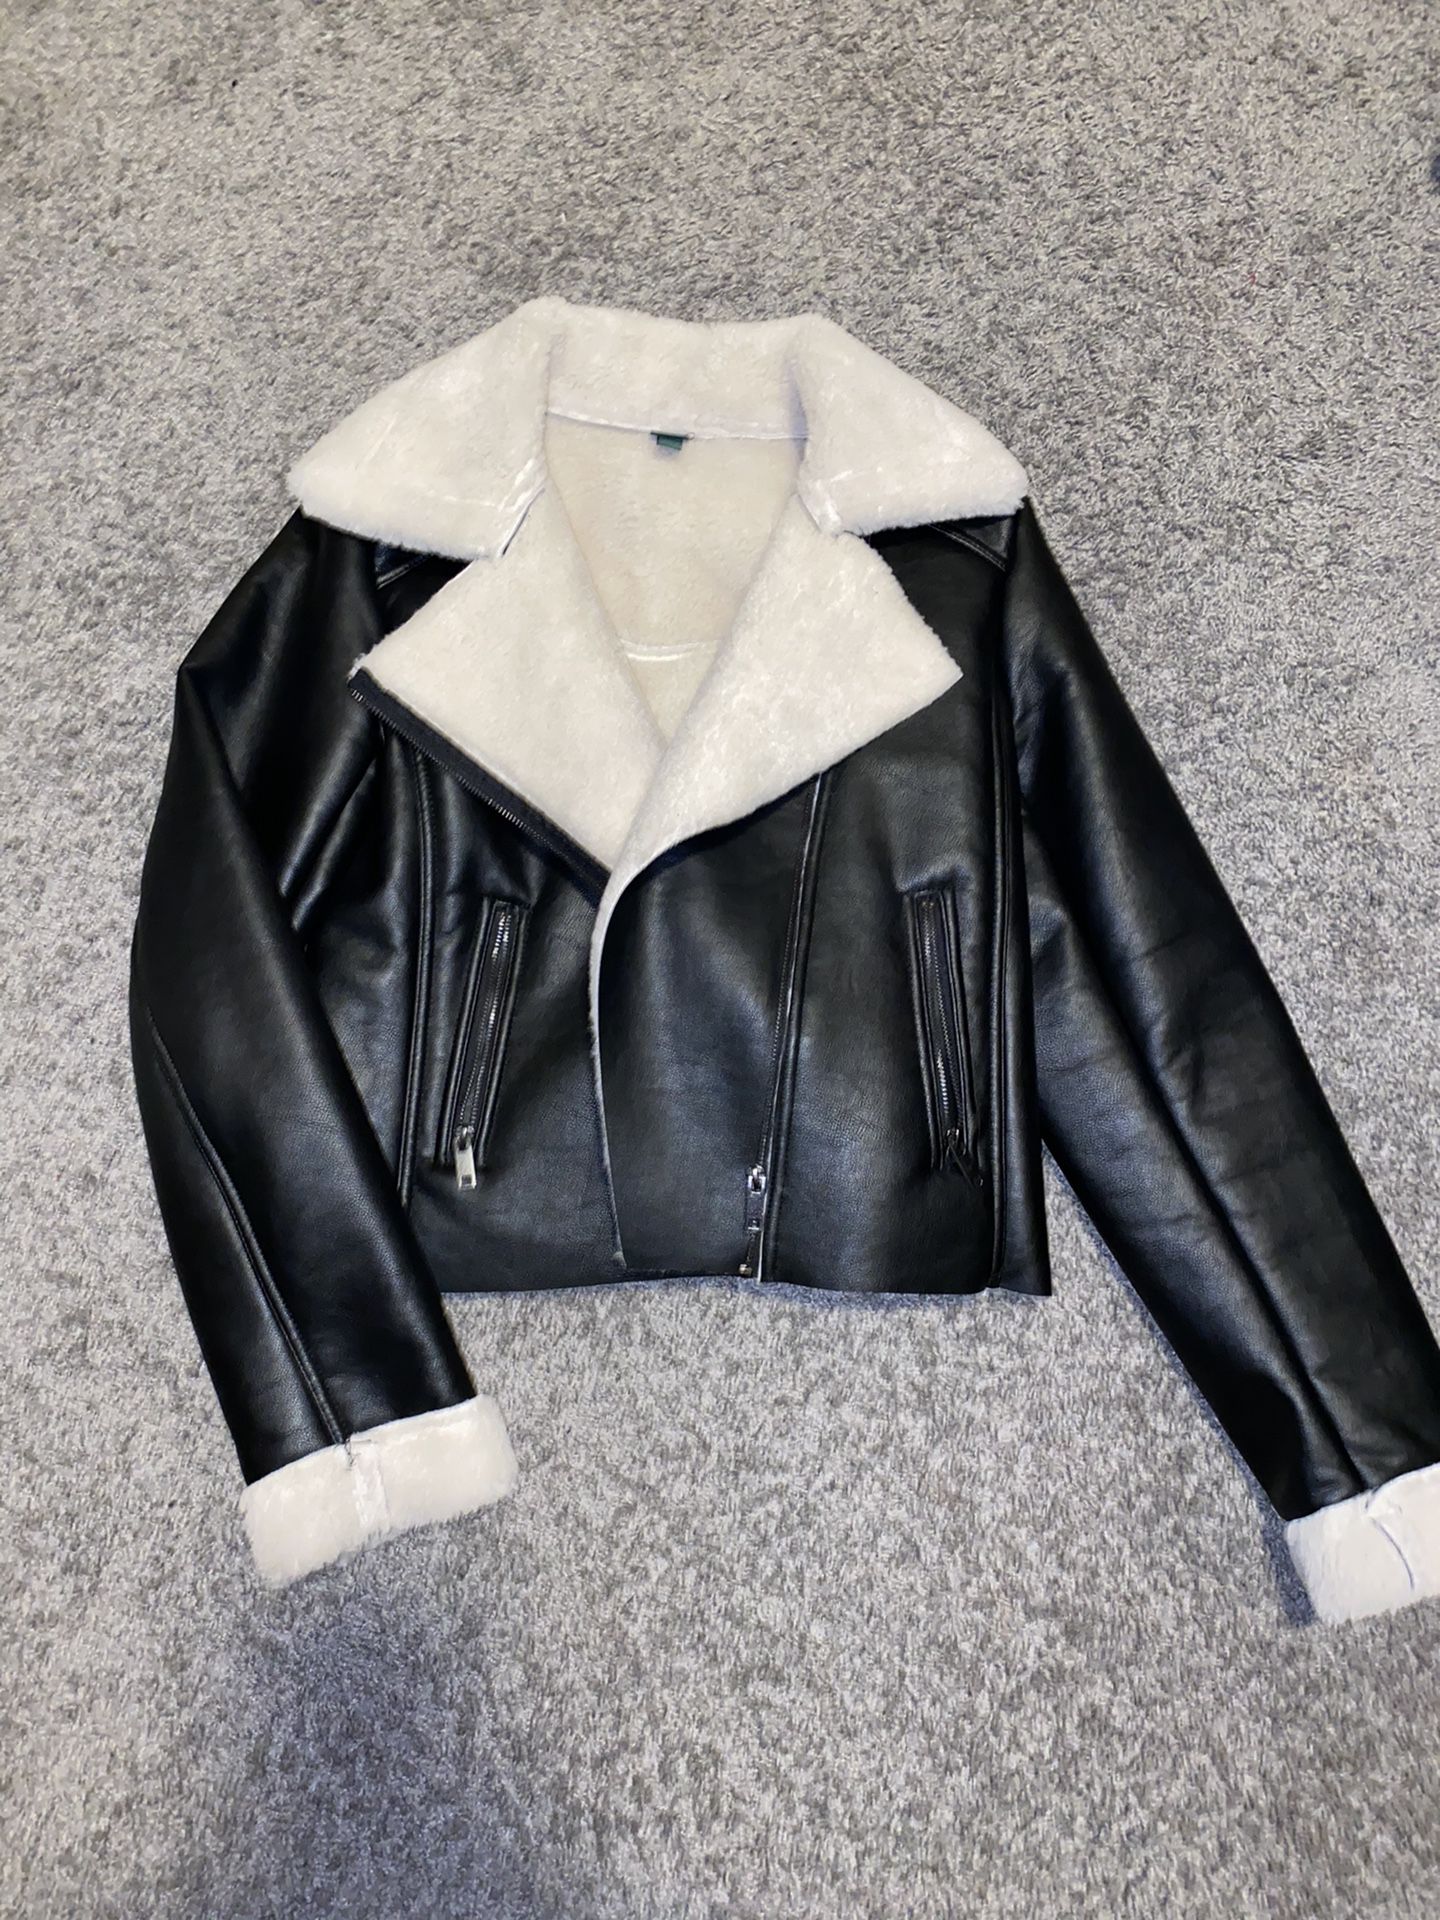 Wild&fabel leather jacket